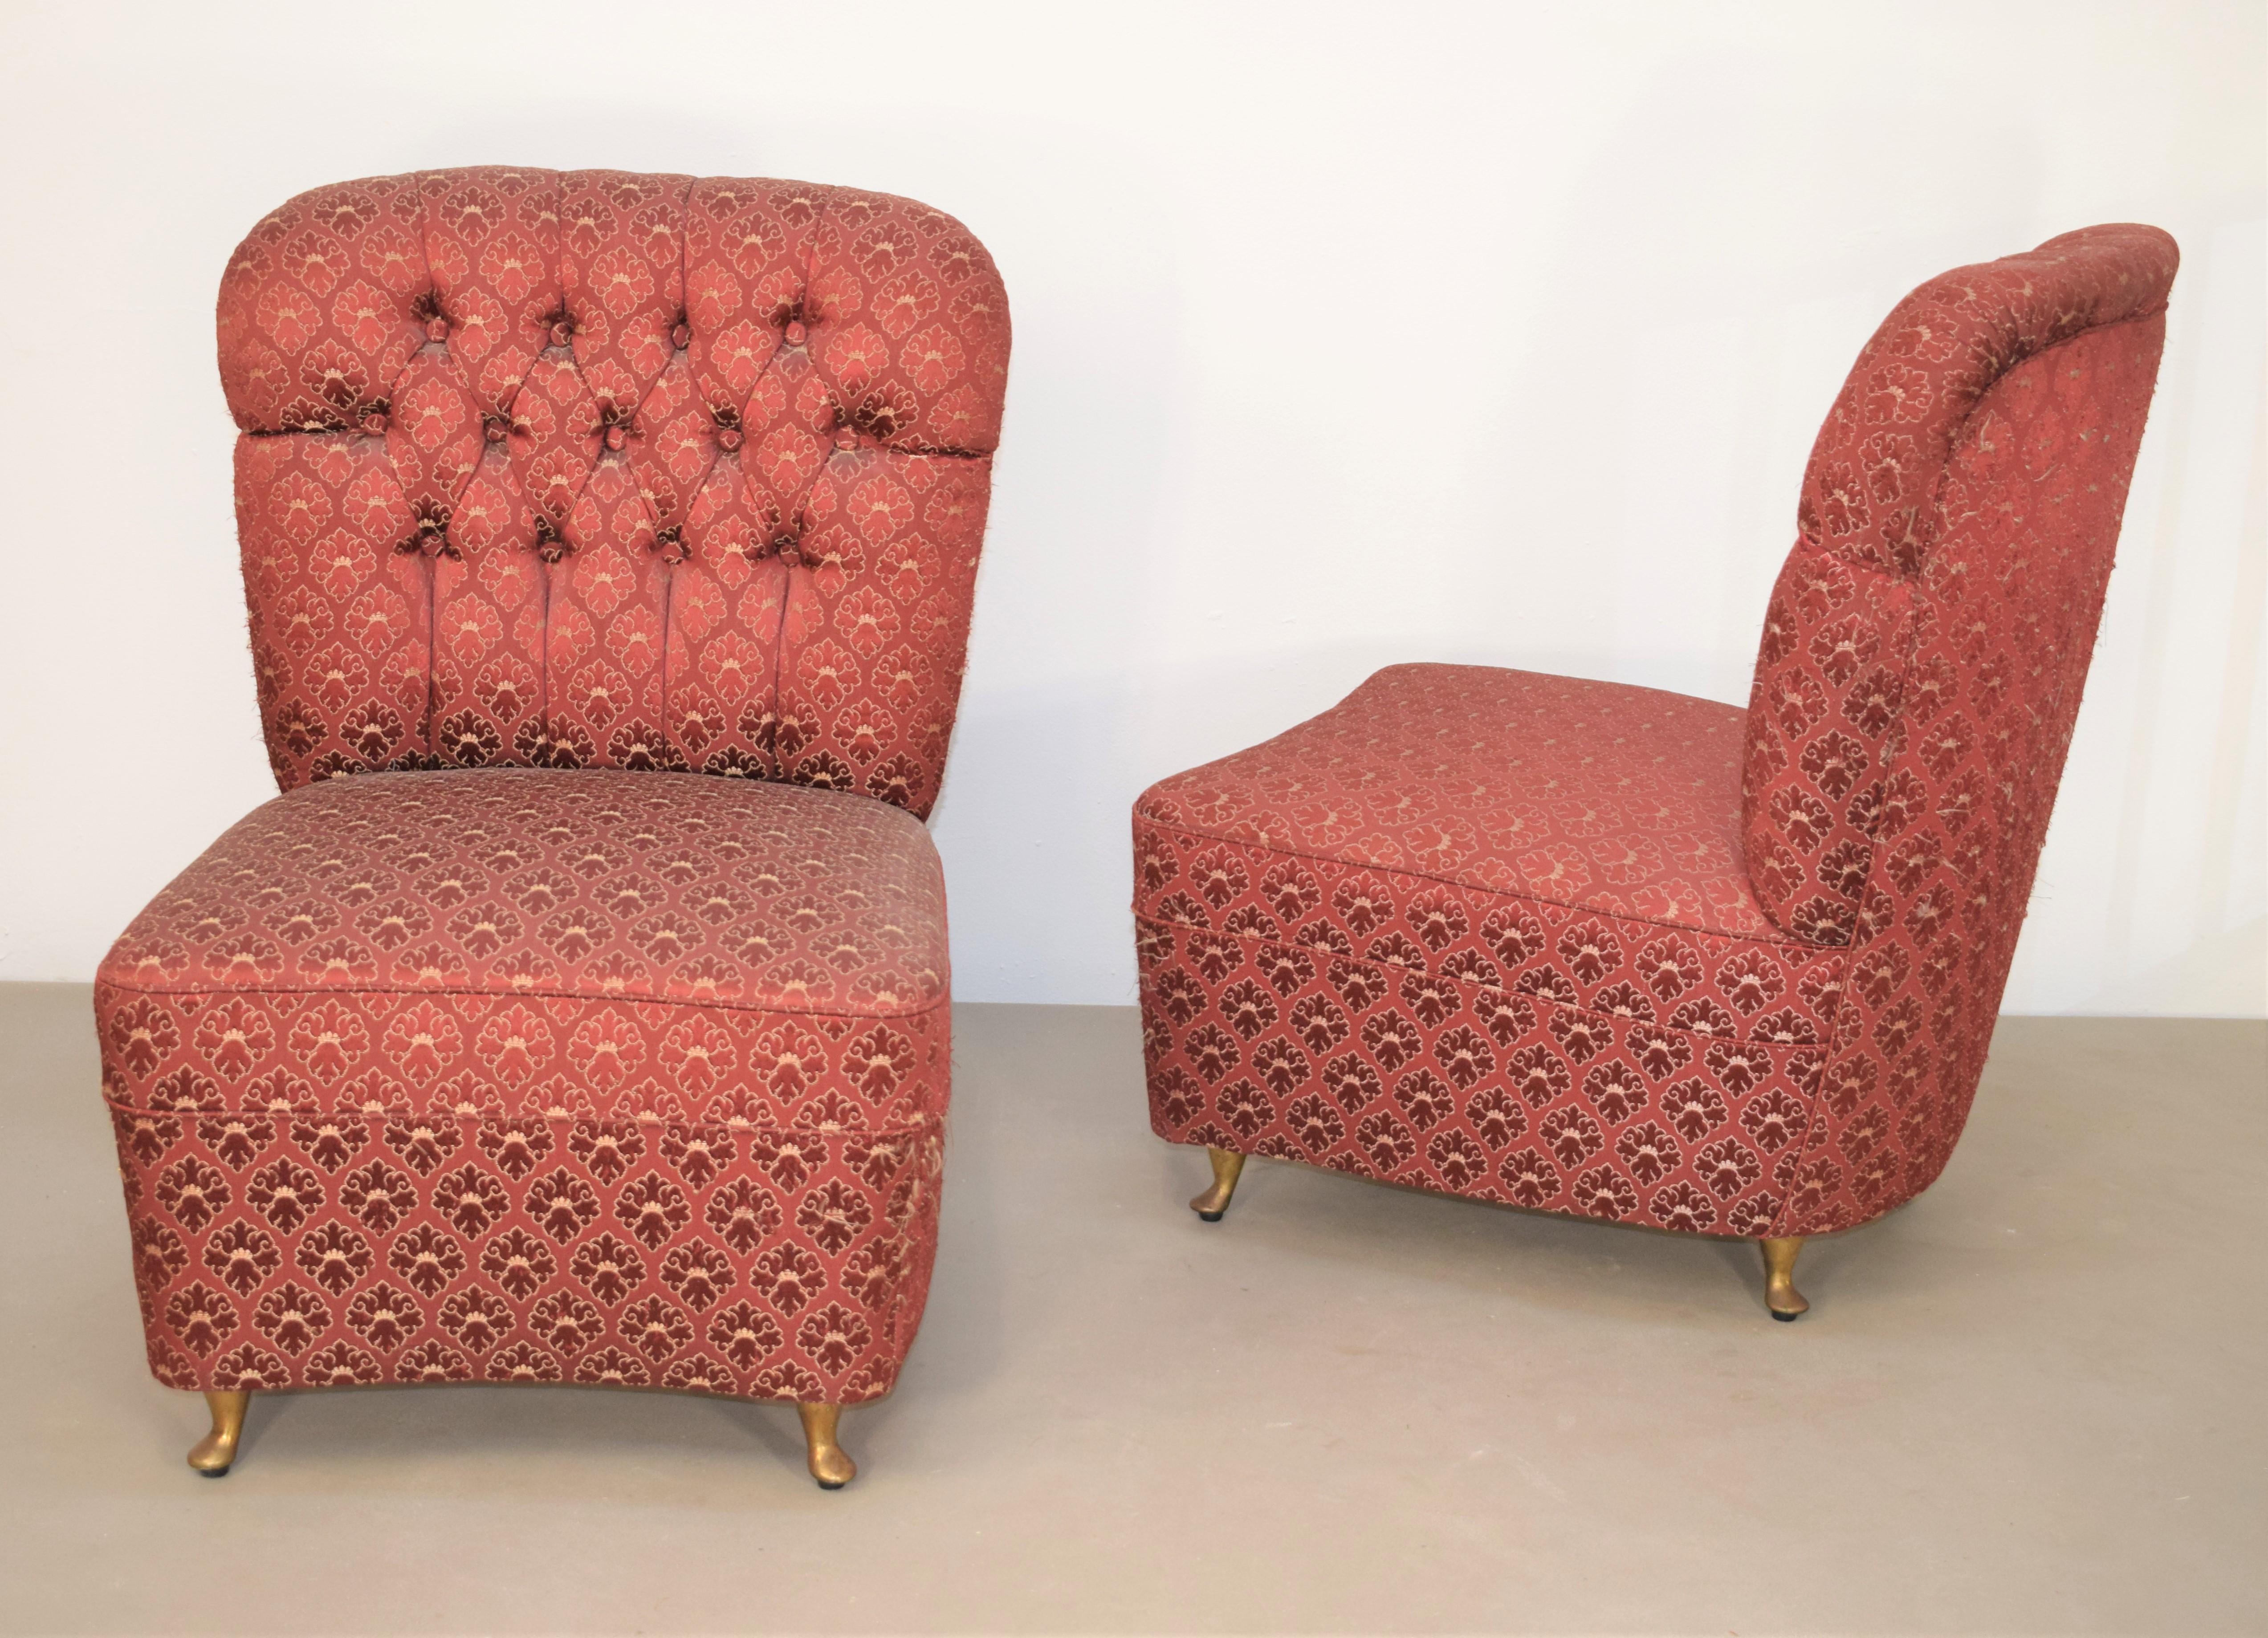 Ein Paar italienische Sessel, 1950er Jahre.

Abmessungen: H= 76 cm; B= 51 cm; D=  57 cm; H S= 38 cm.